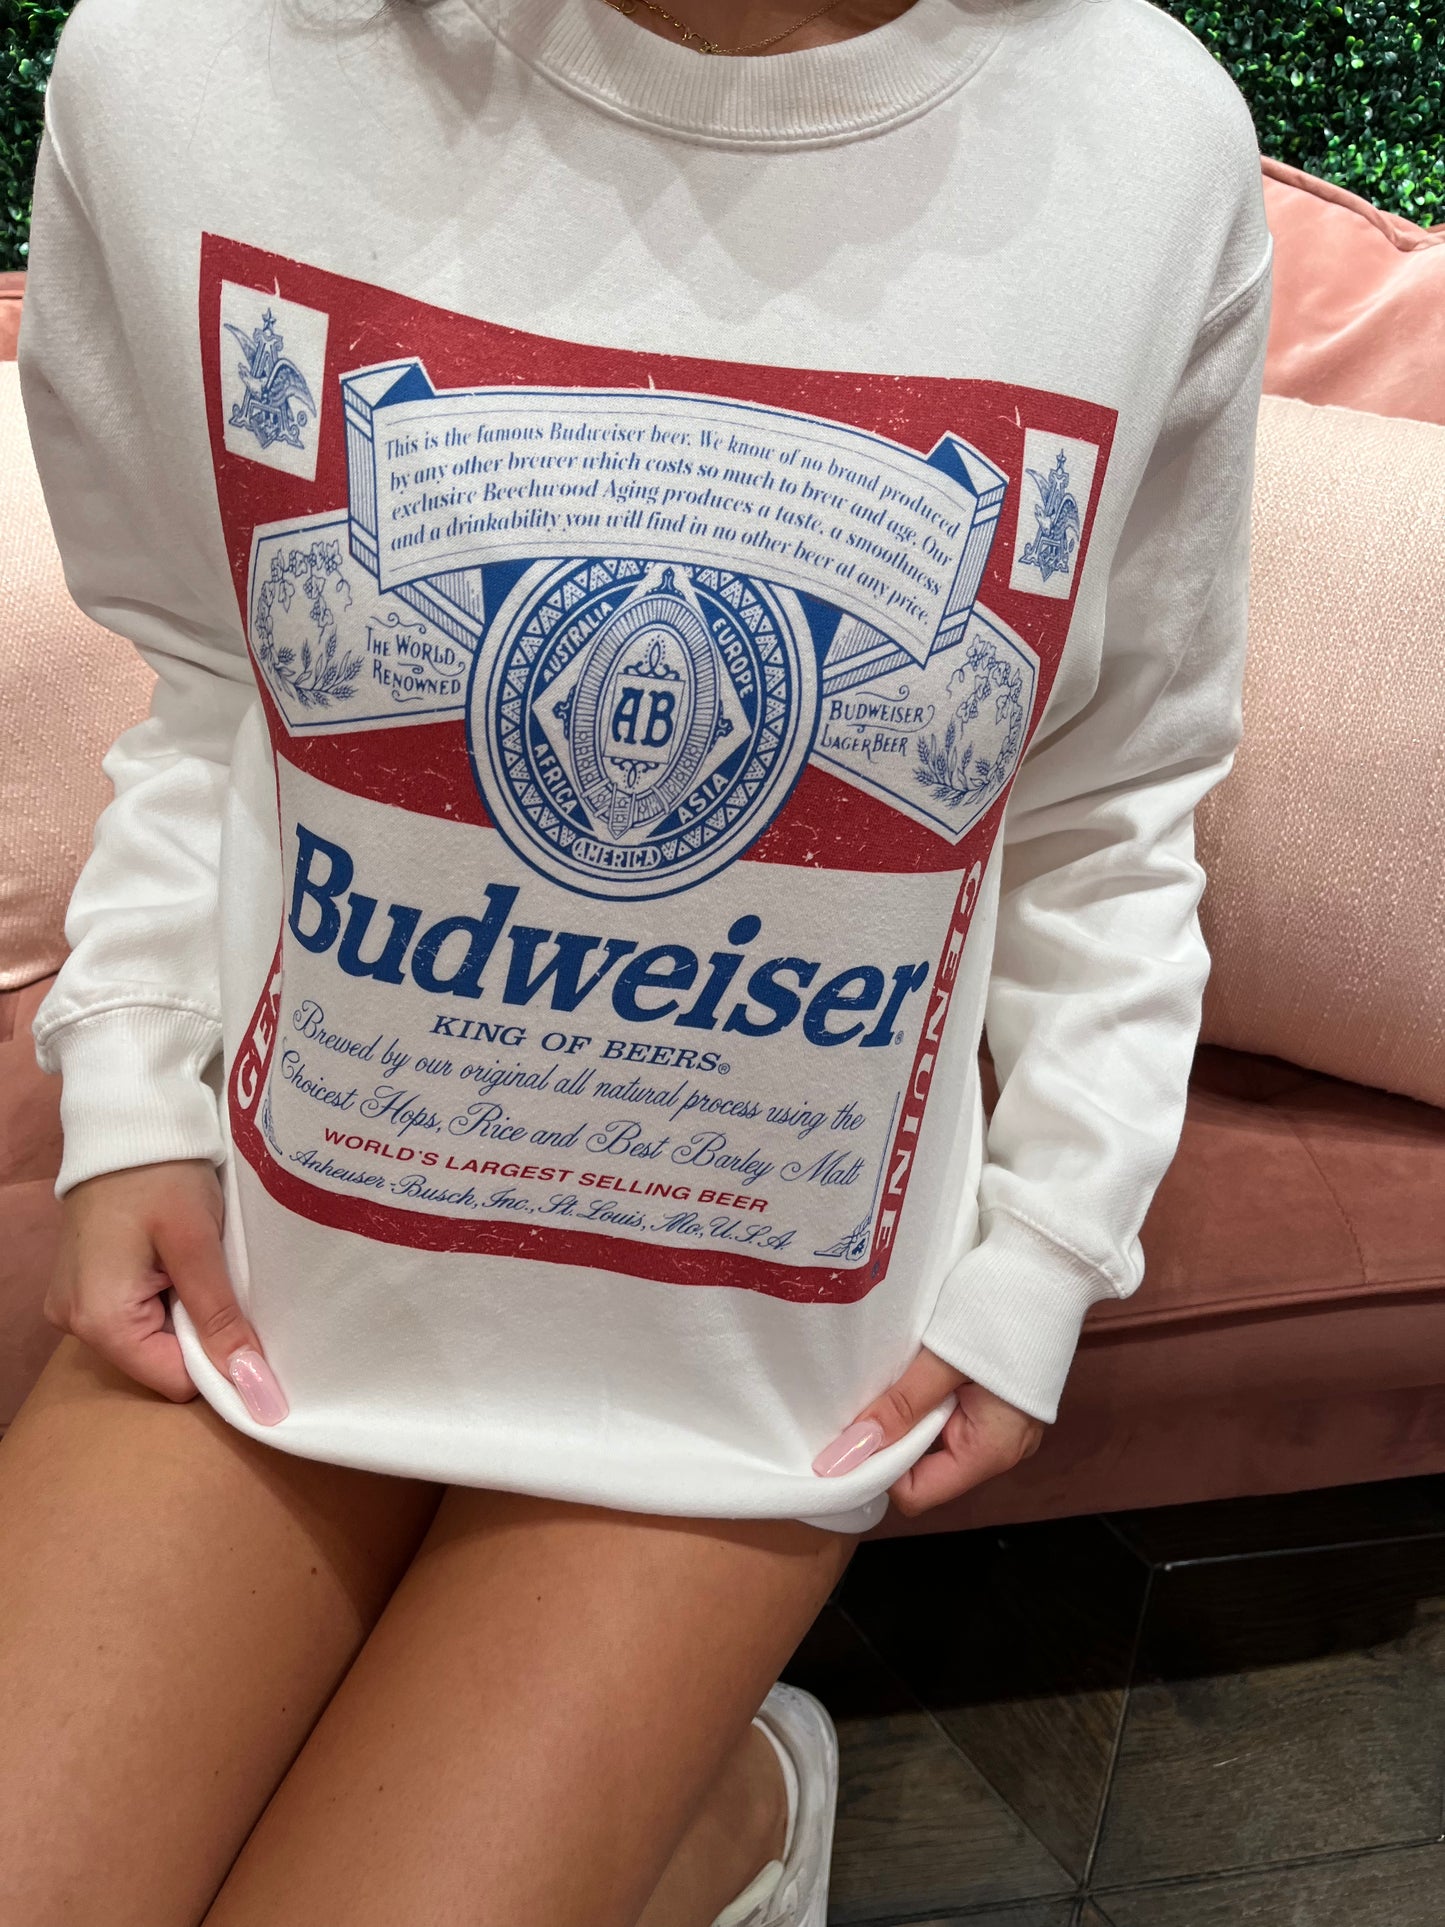 Vintage Budweiser Sweatshirt in White